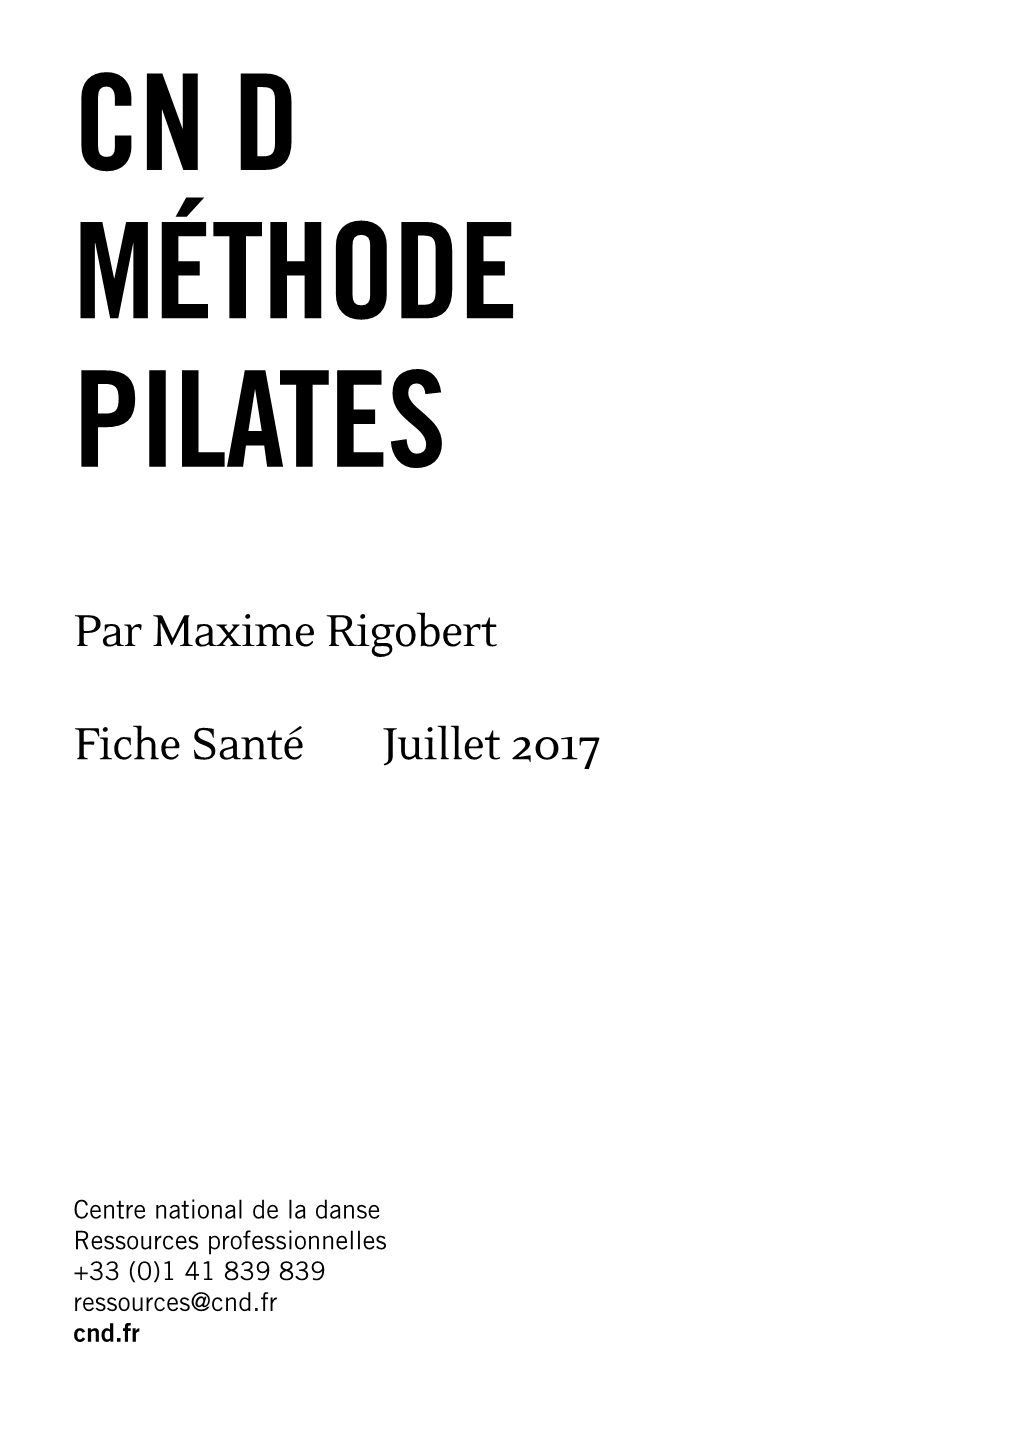 Méthode Pilates